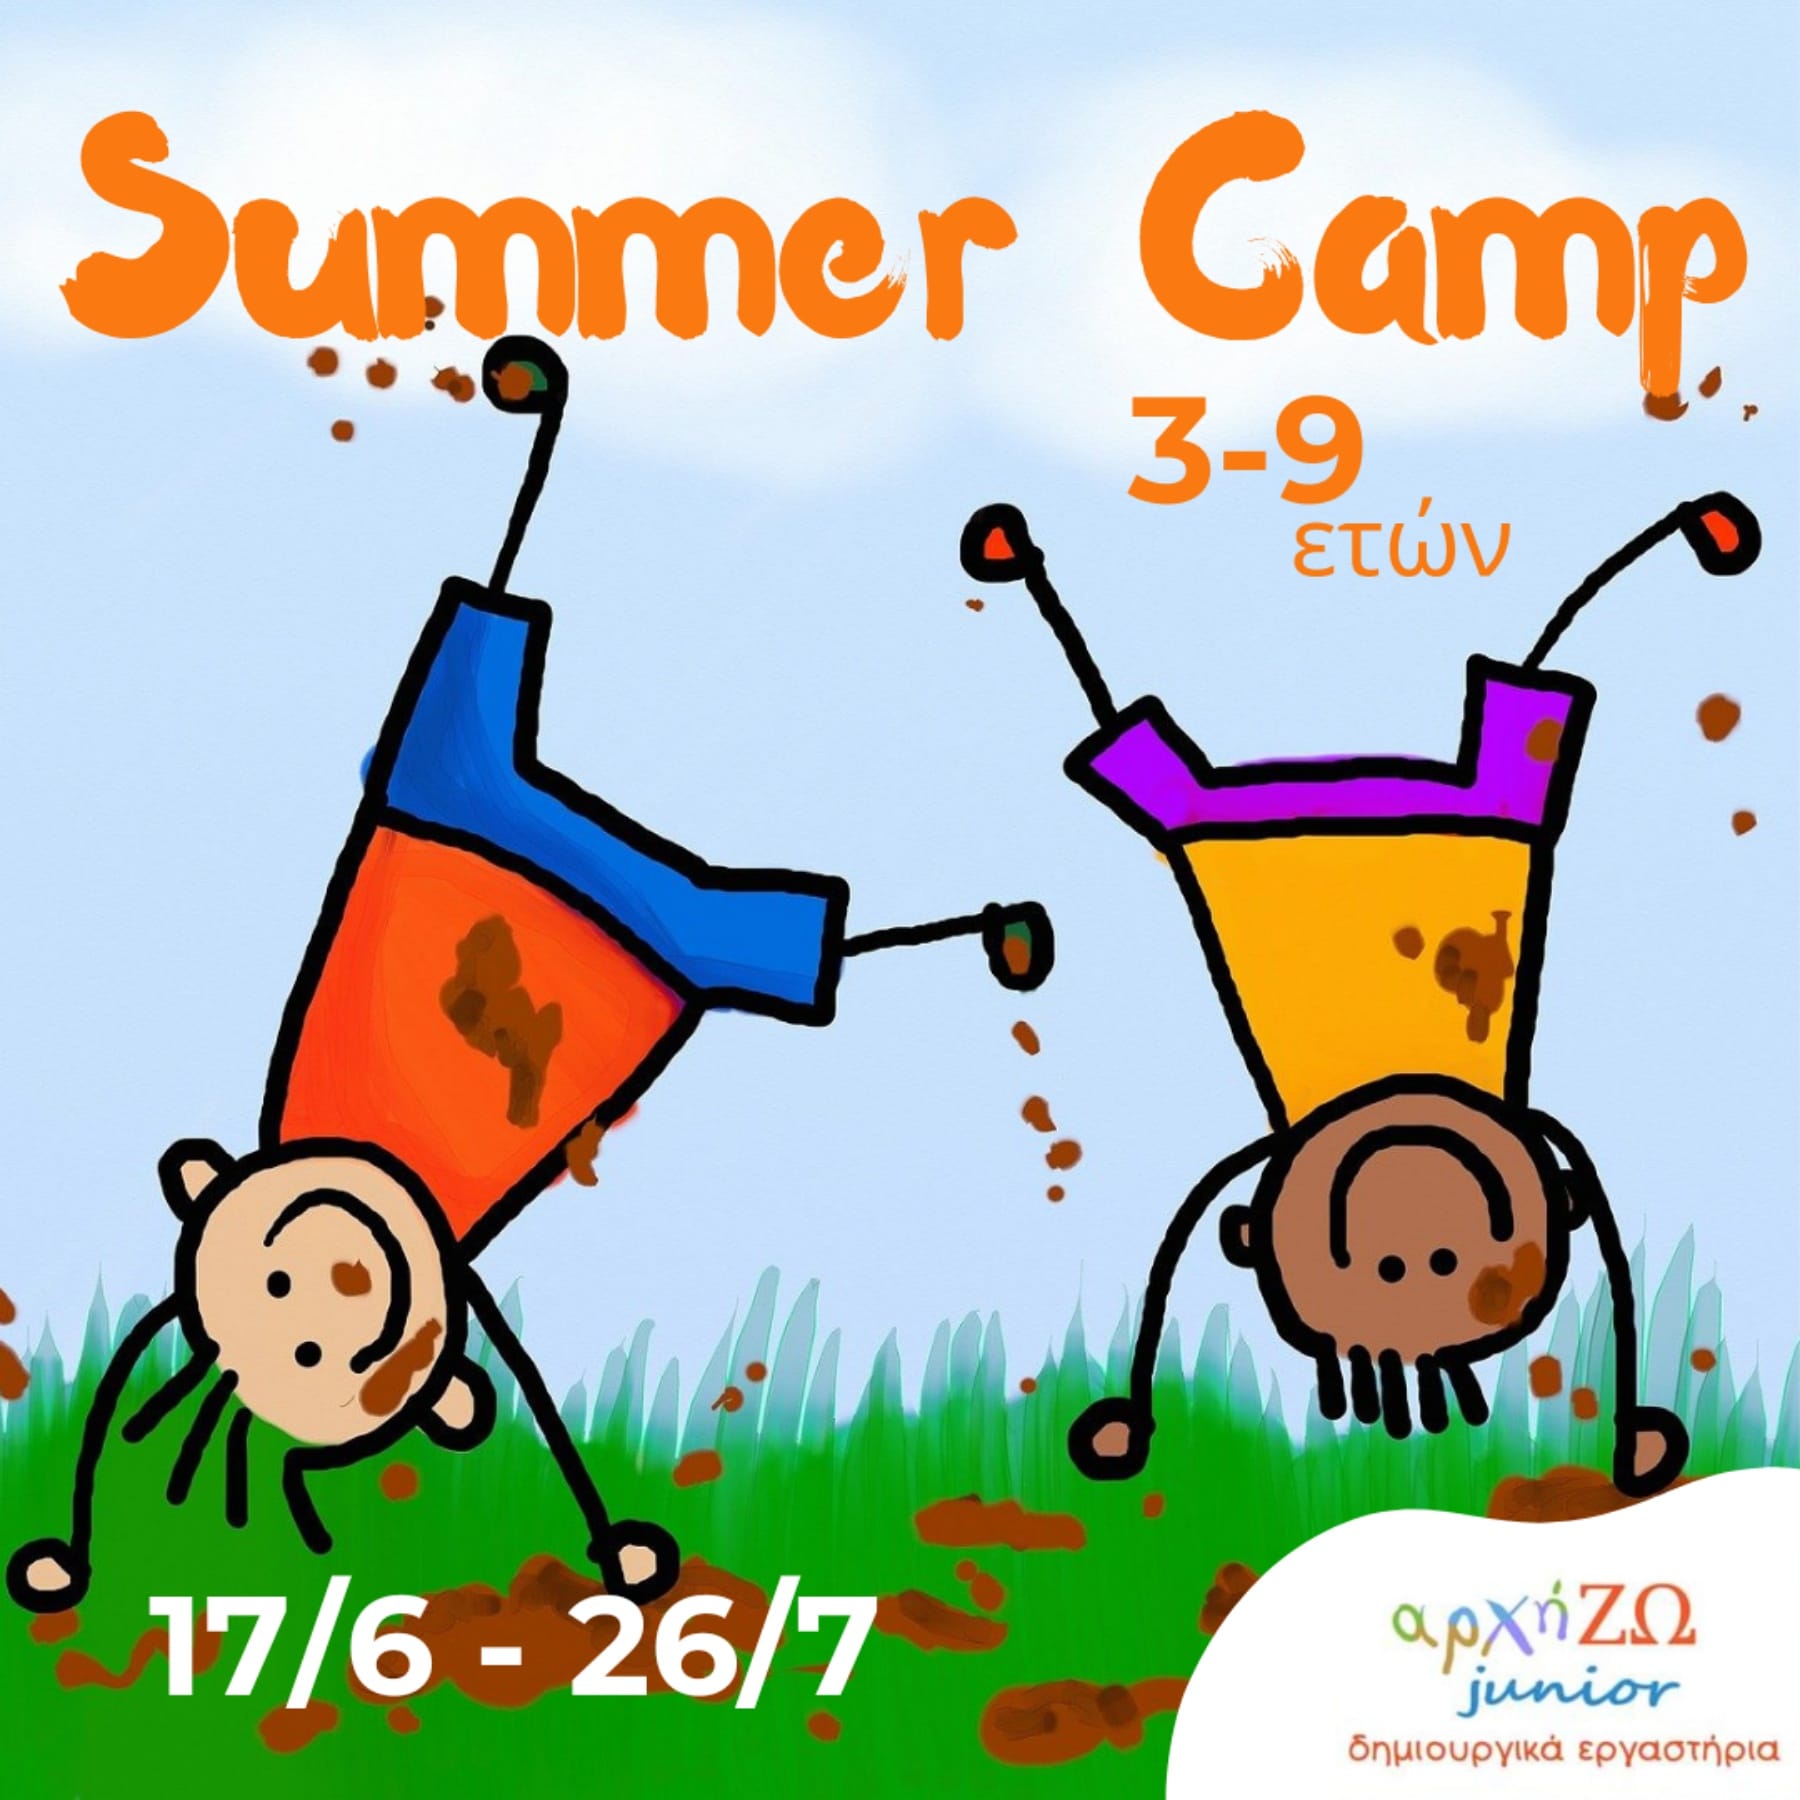 ΑΡΧΗΖΩ JUNIOR SUMMER CAMP logo